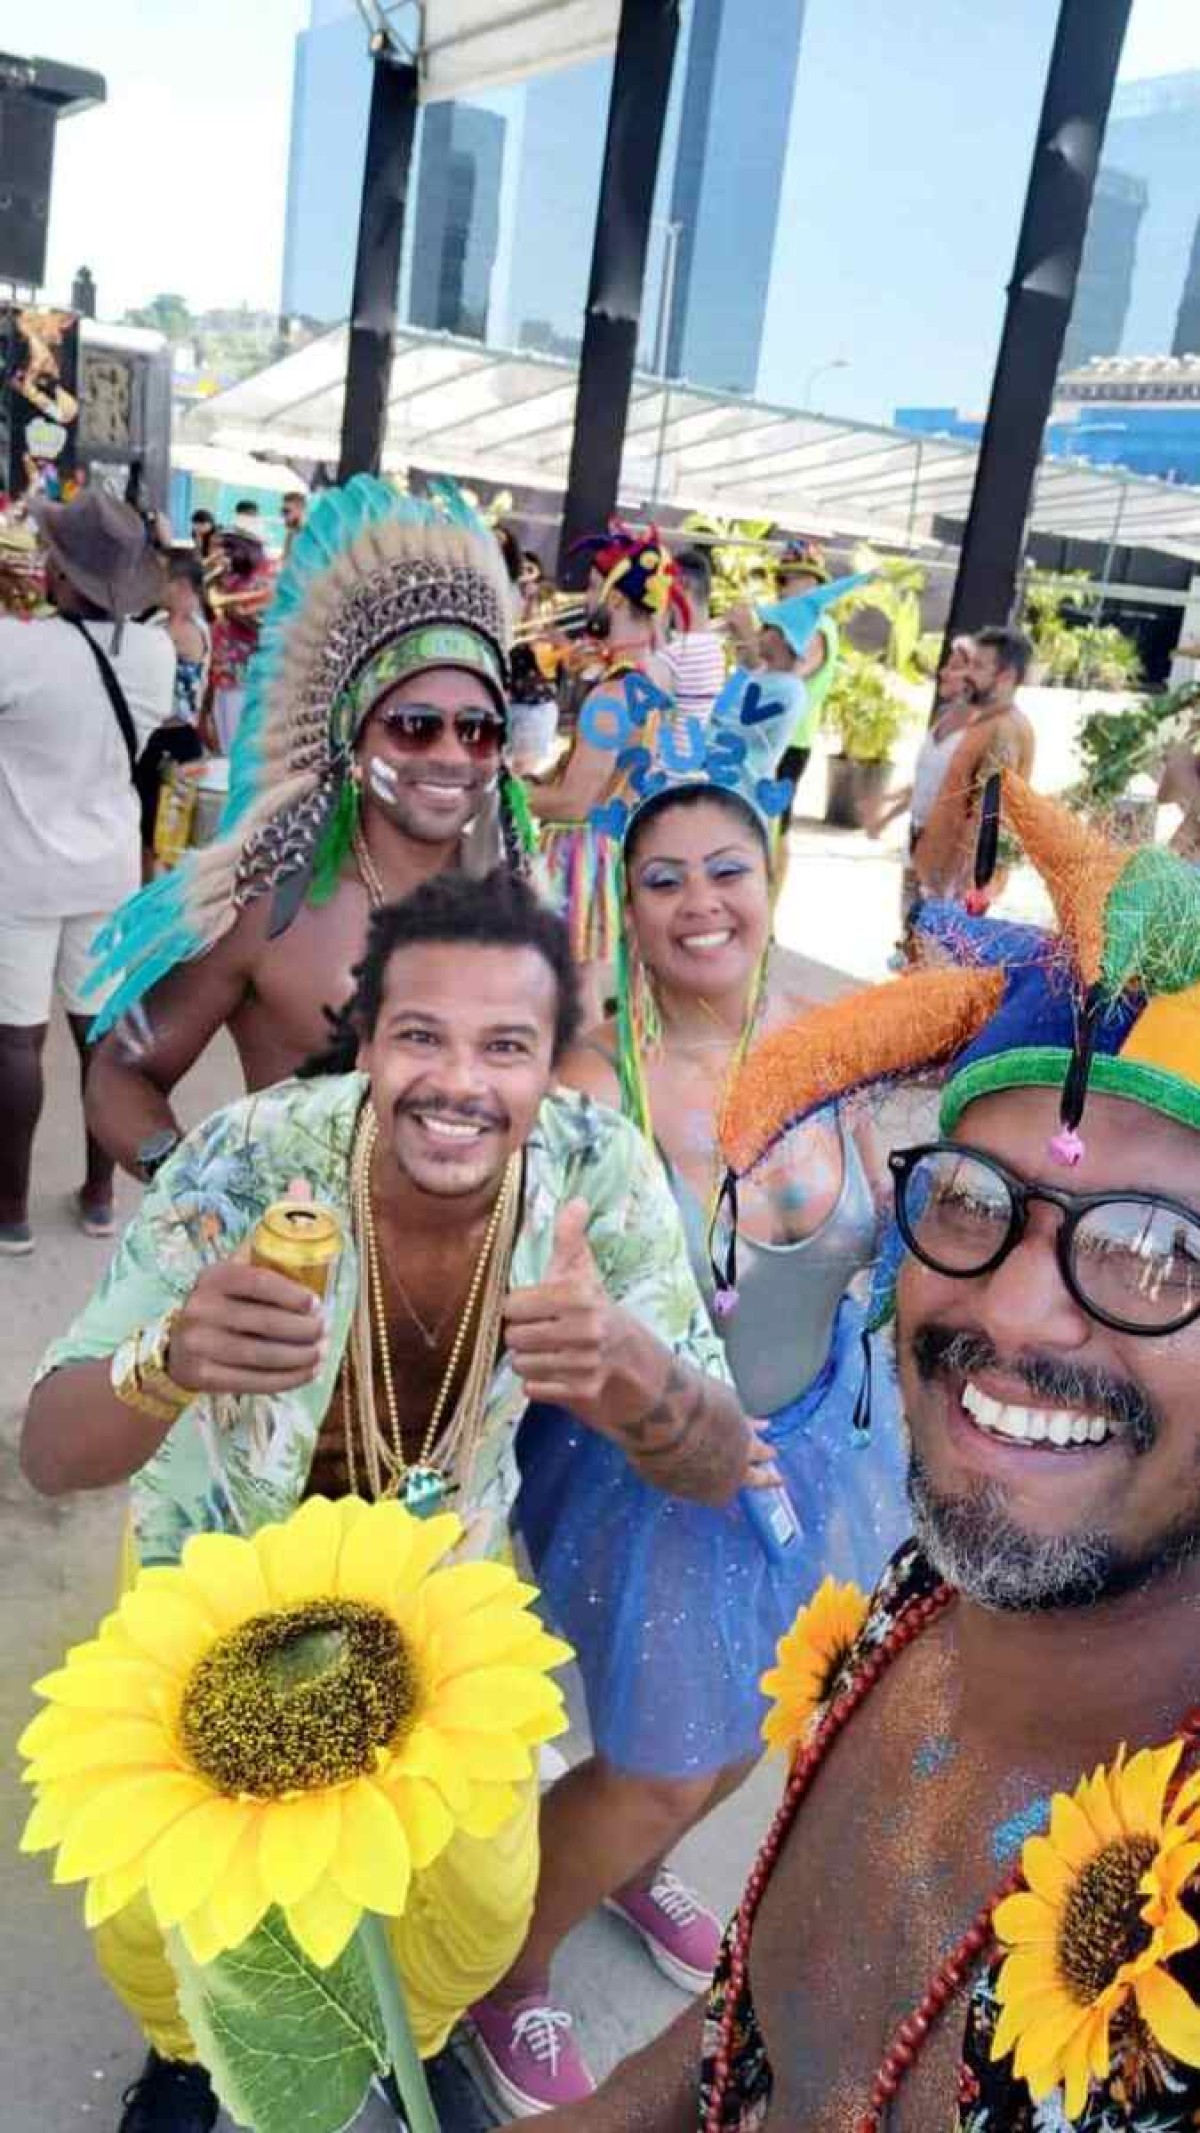 João Felipe e seus amigos compraram passagens para o Rio em abril de 2022